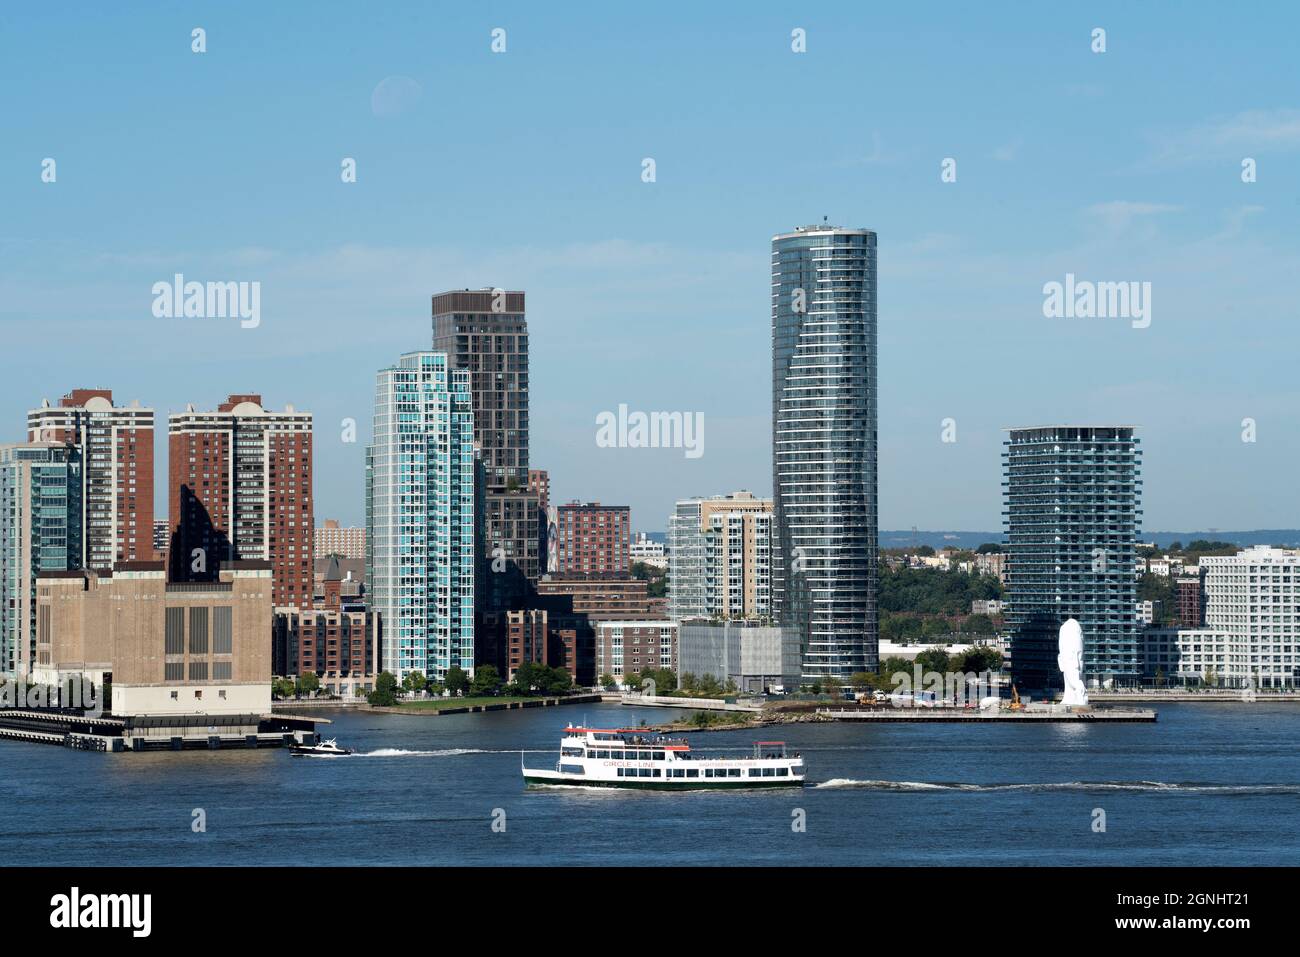 Ein Ausflugsboot der Circle Line, das den Hudson River entlang an Jersey City, New Jersey, und eine 80 Meter hohe Skulptur am Wasser von Jaume Plensa führt. Stockfoto